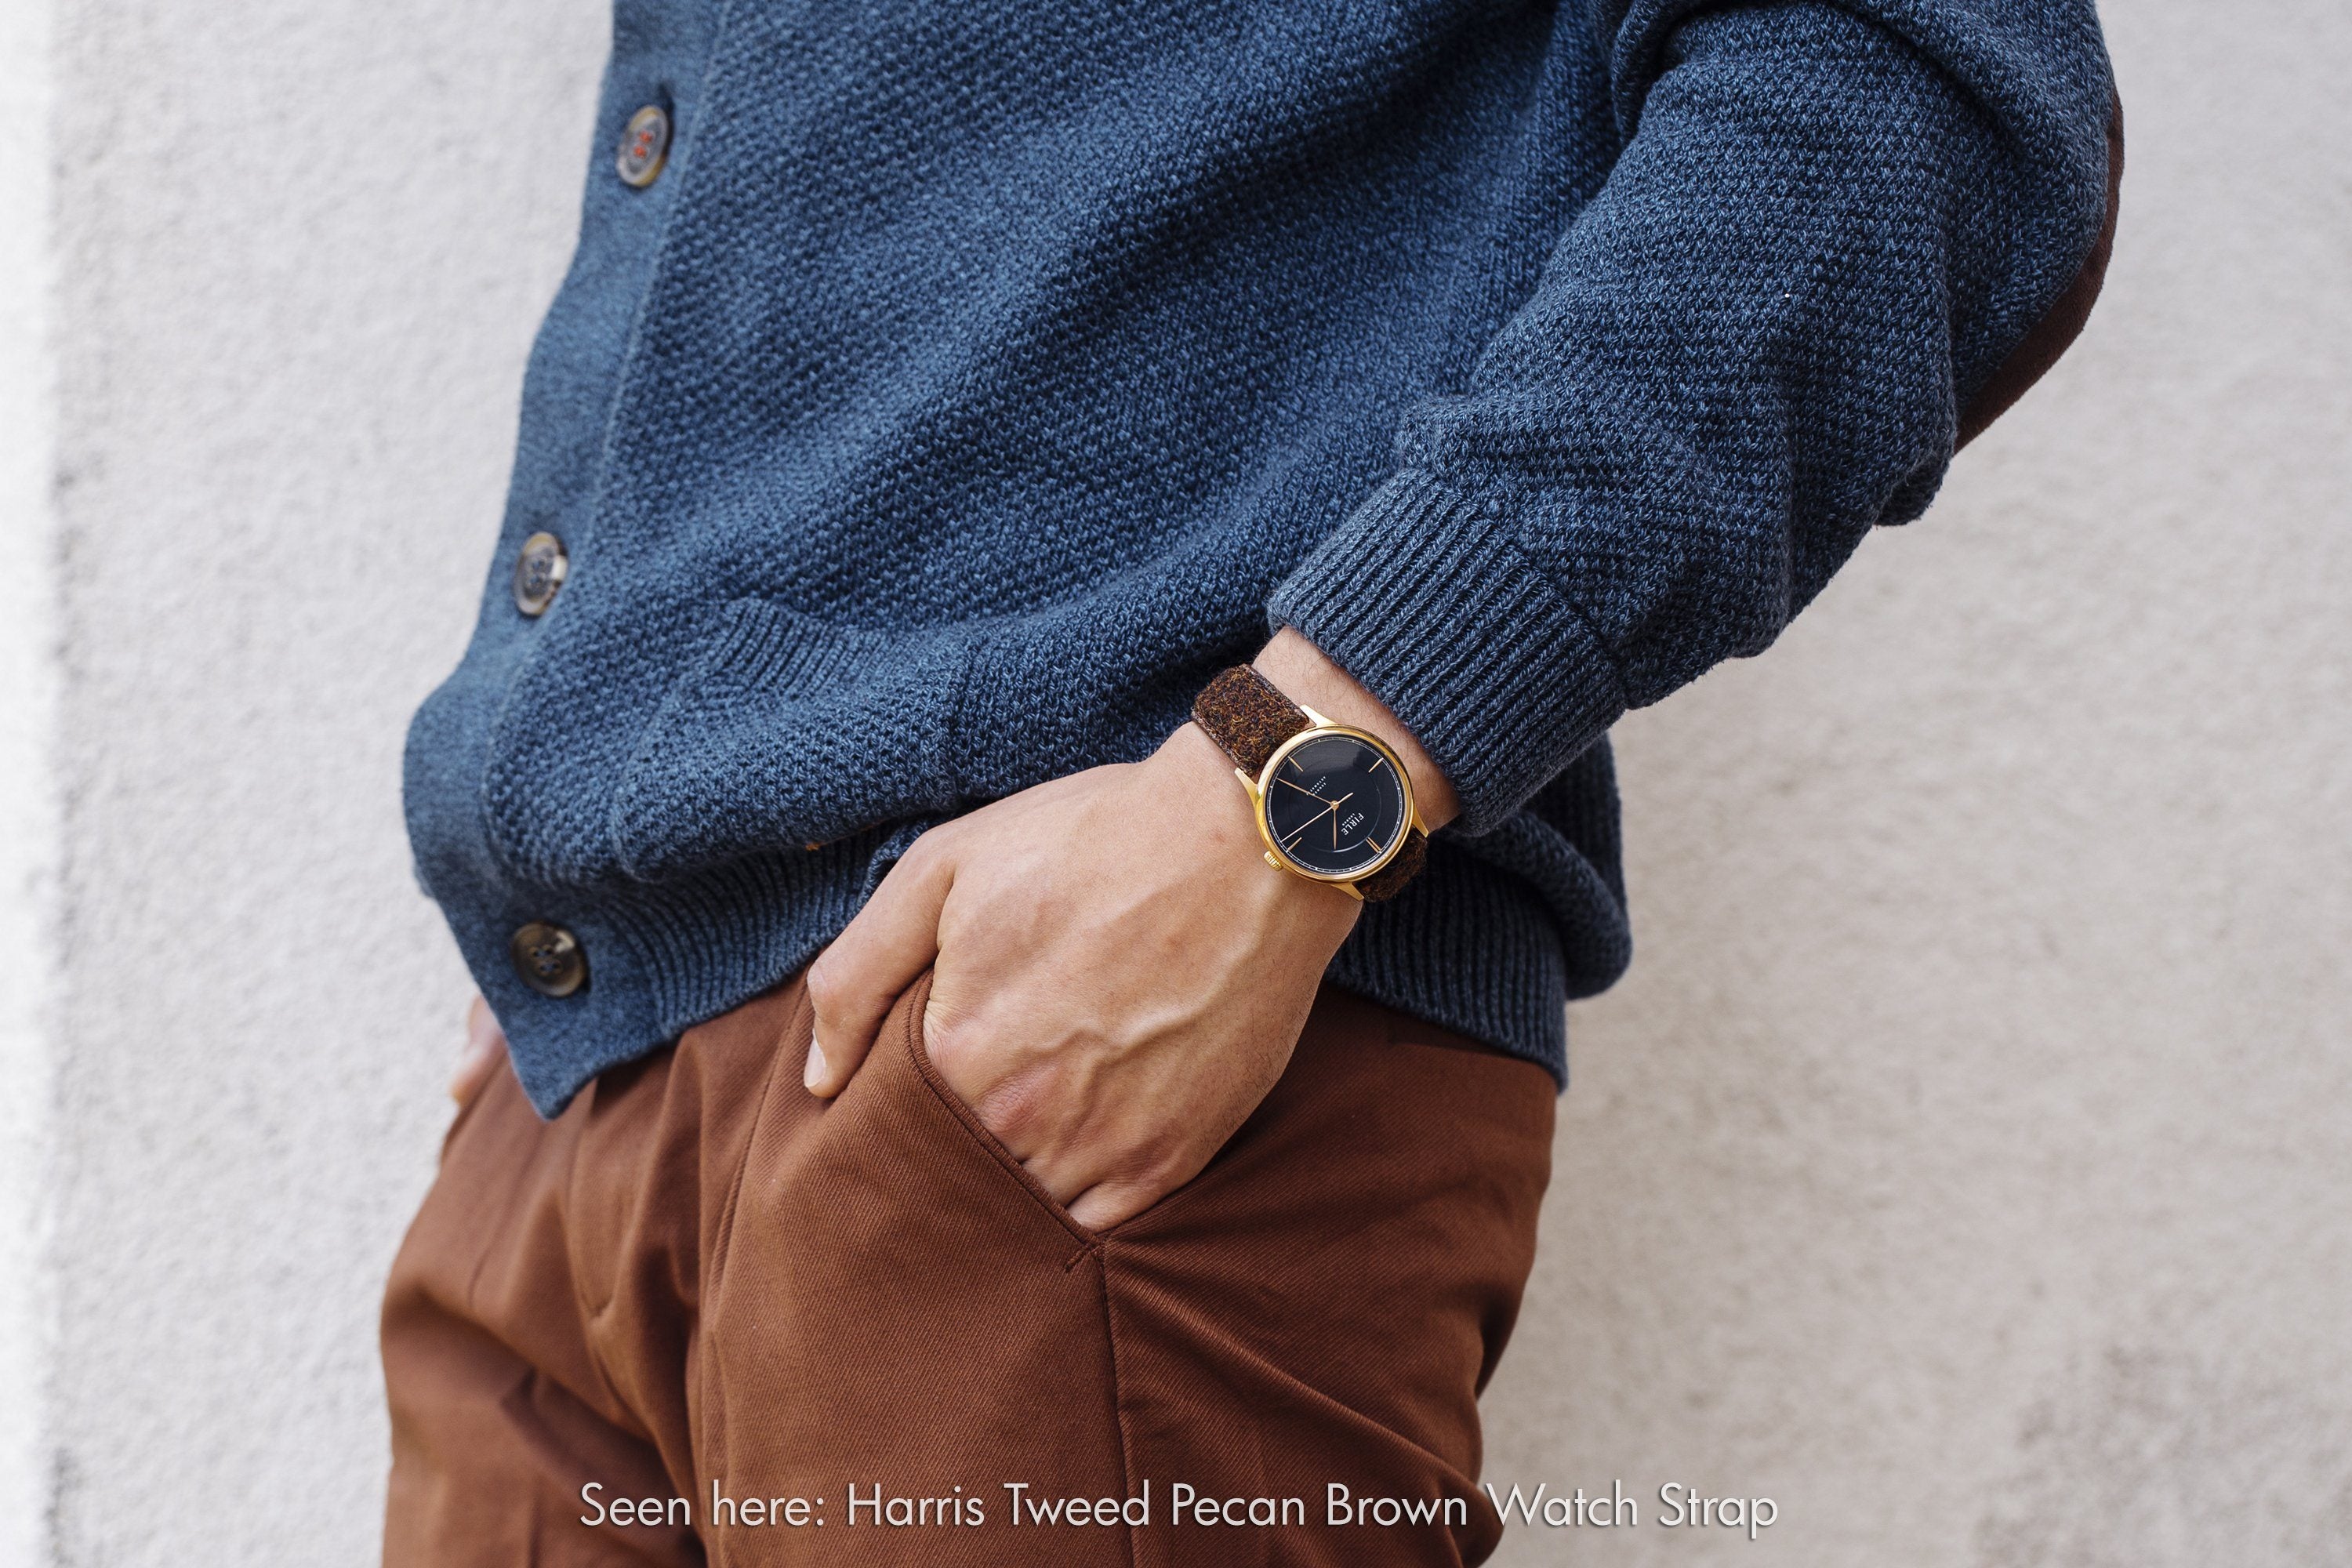 Harris Tweed Pecan Brown Watch Strap